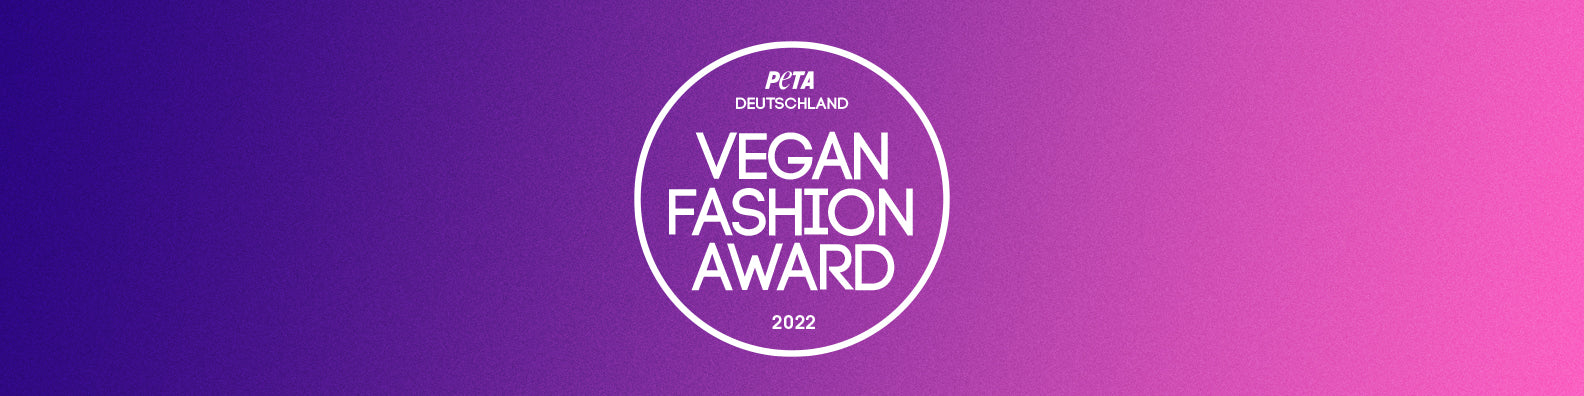 Vegan Fashion Award